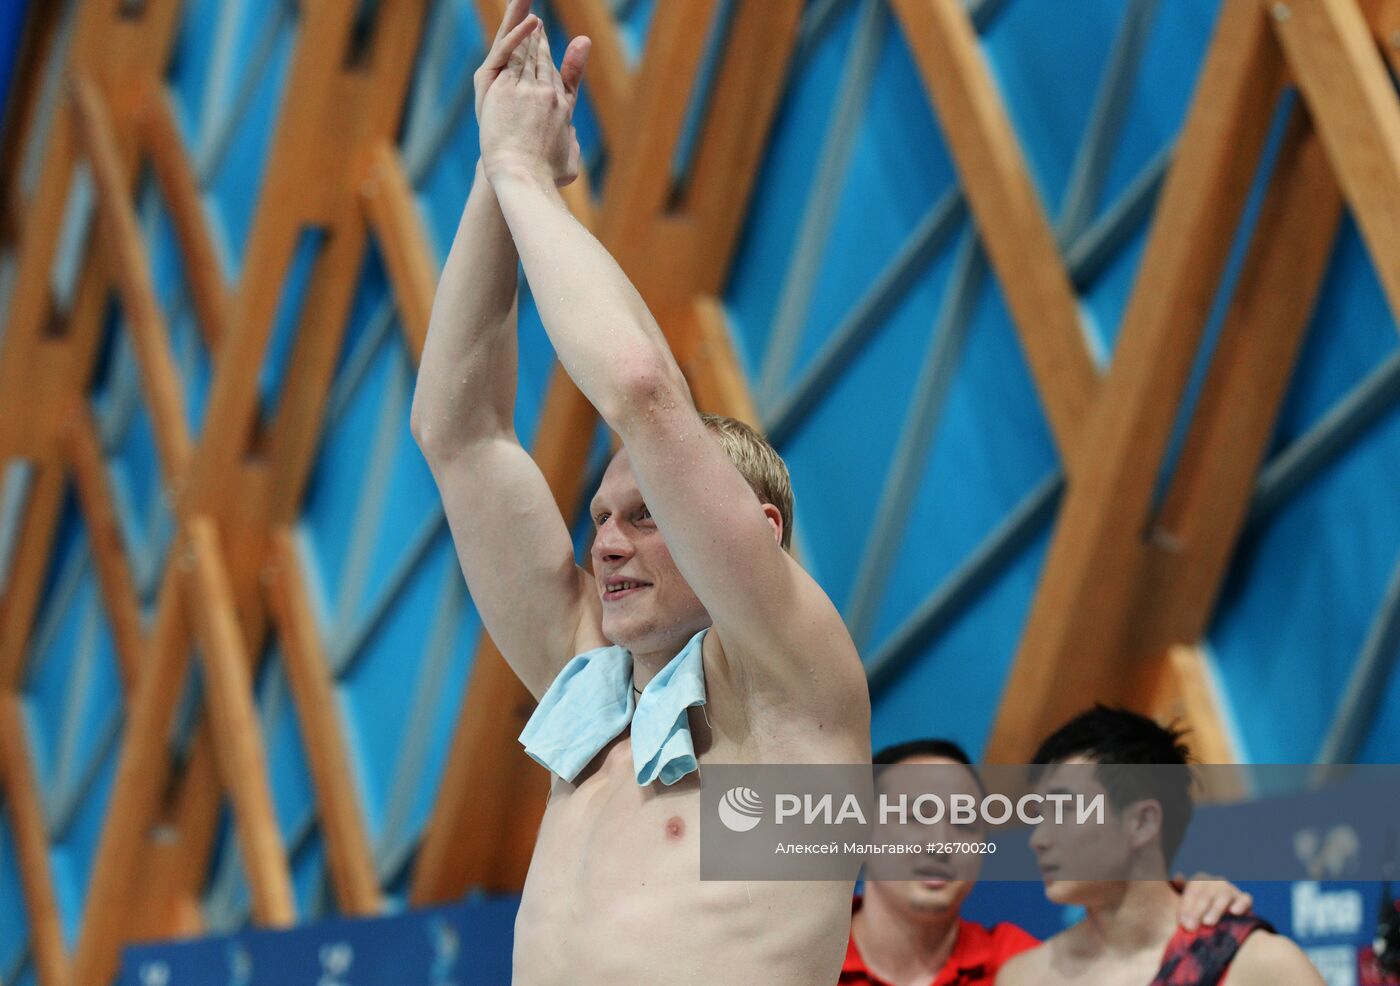 Чемпионат мира FINA 2015. Прыжки в воду. Мужчины. Трамплин 3 м. Финал